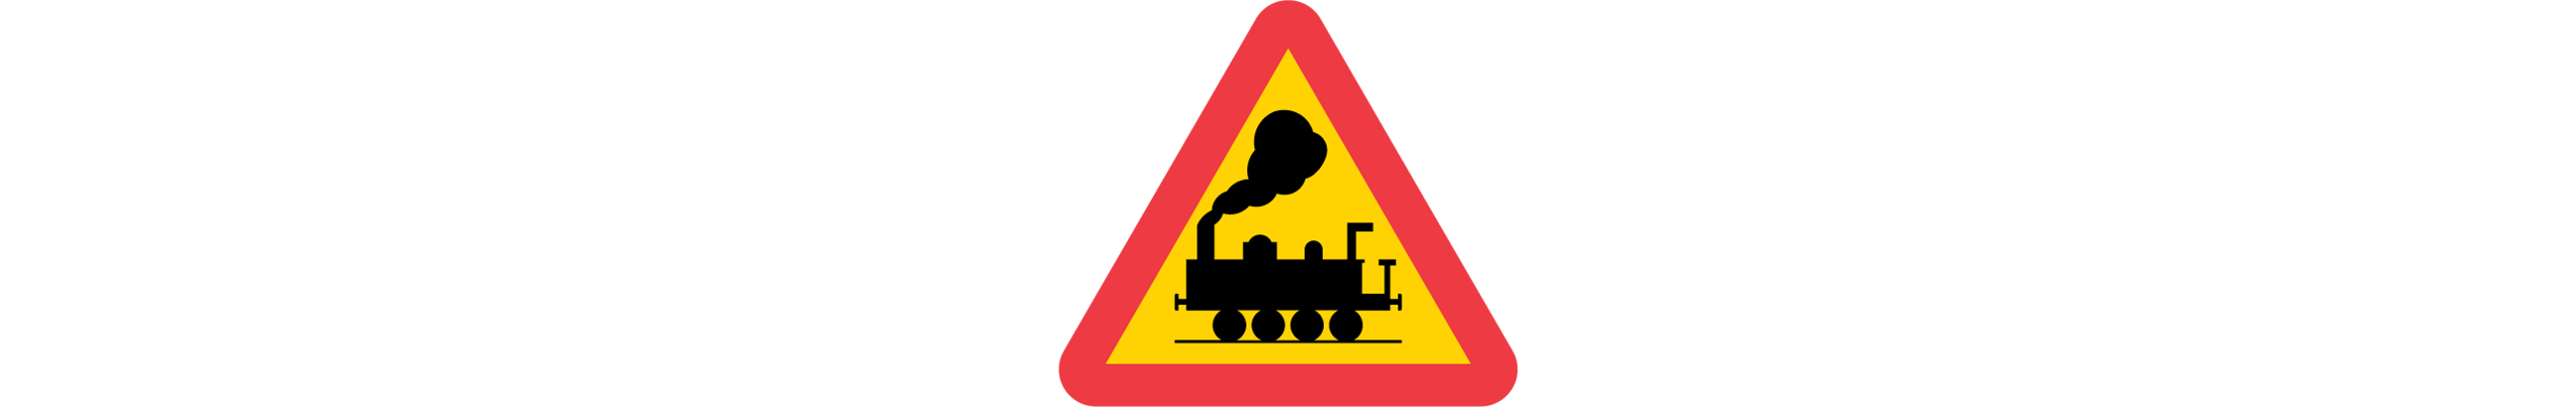 varning för järnvägskorsning utan bommar